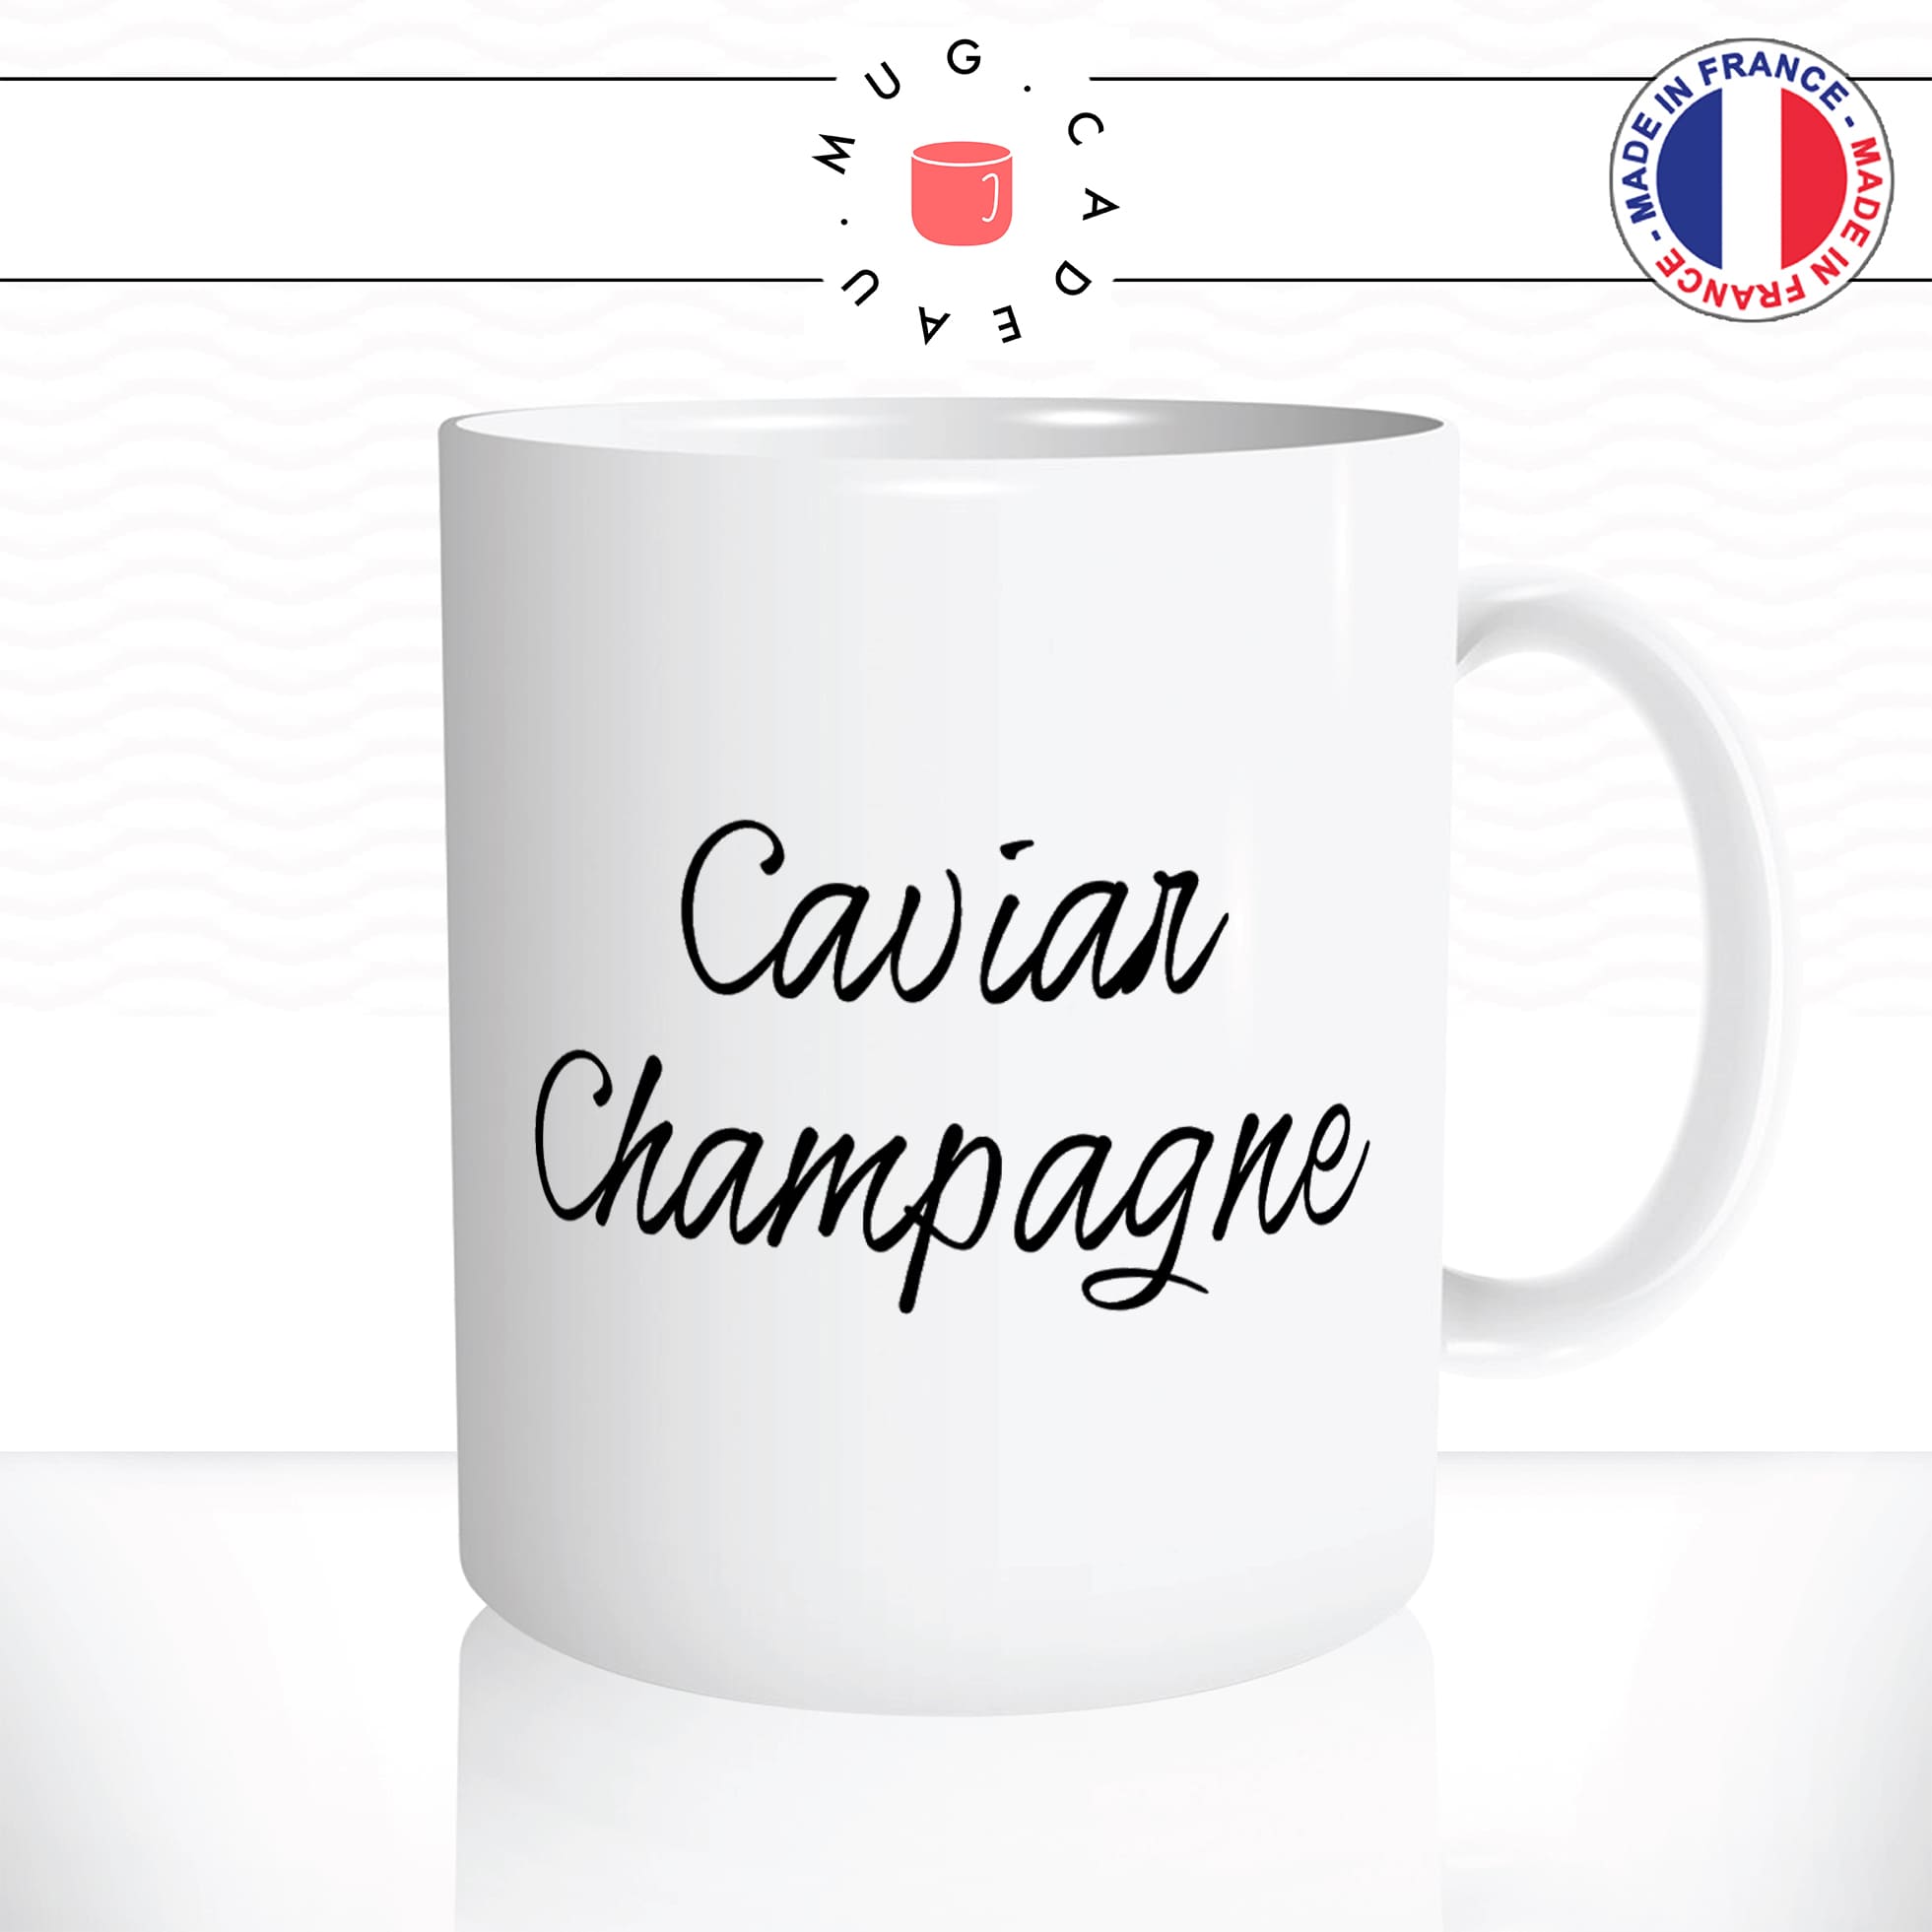 mug-tasse-blanc-unique-caviar-champagne-riche-apéro-homme-femme-vacances-humour-fun-cool-idée-cadeau-original-personnalisé2